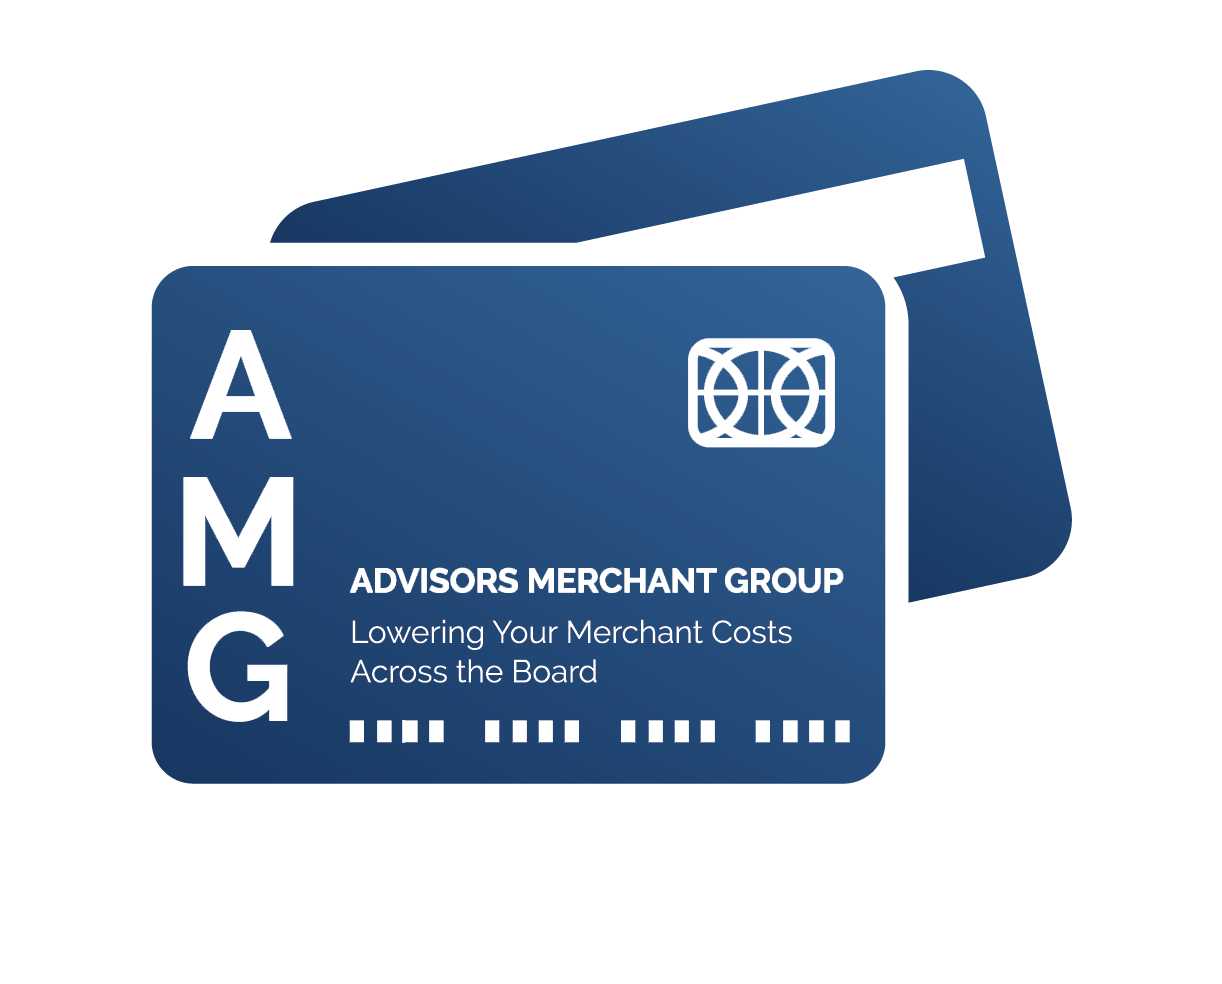 Advisors Merchant Group